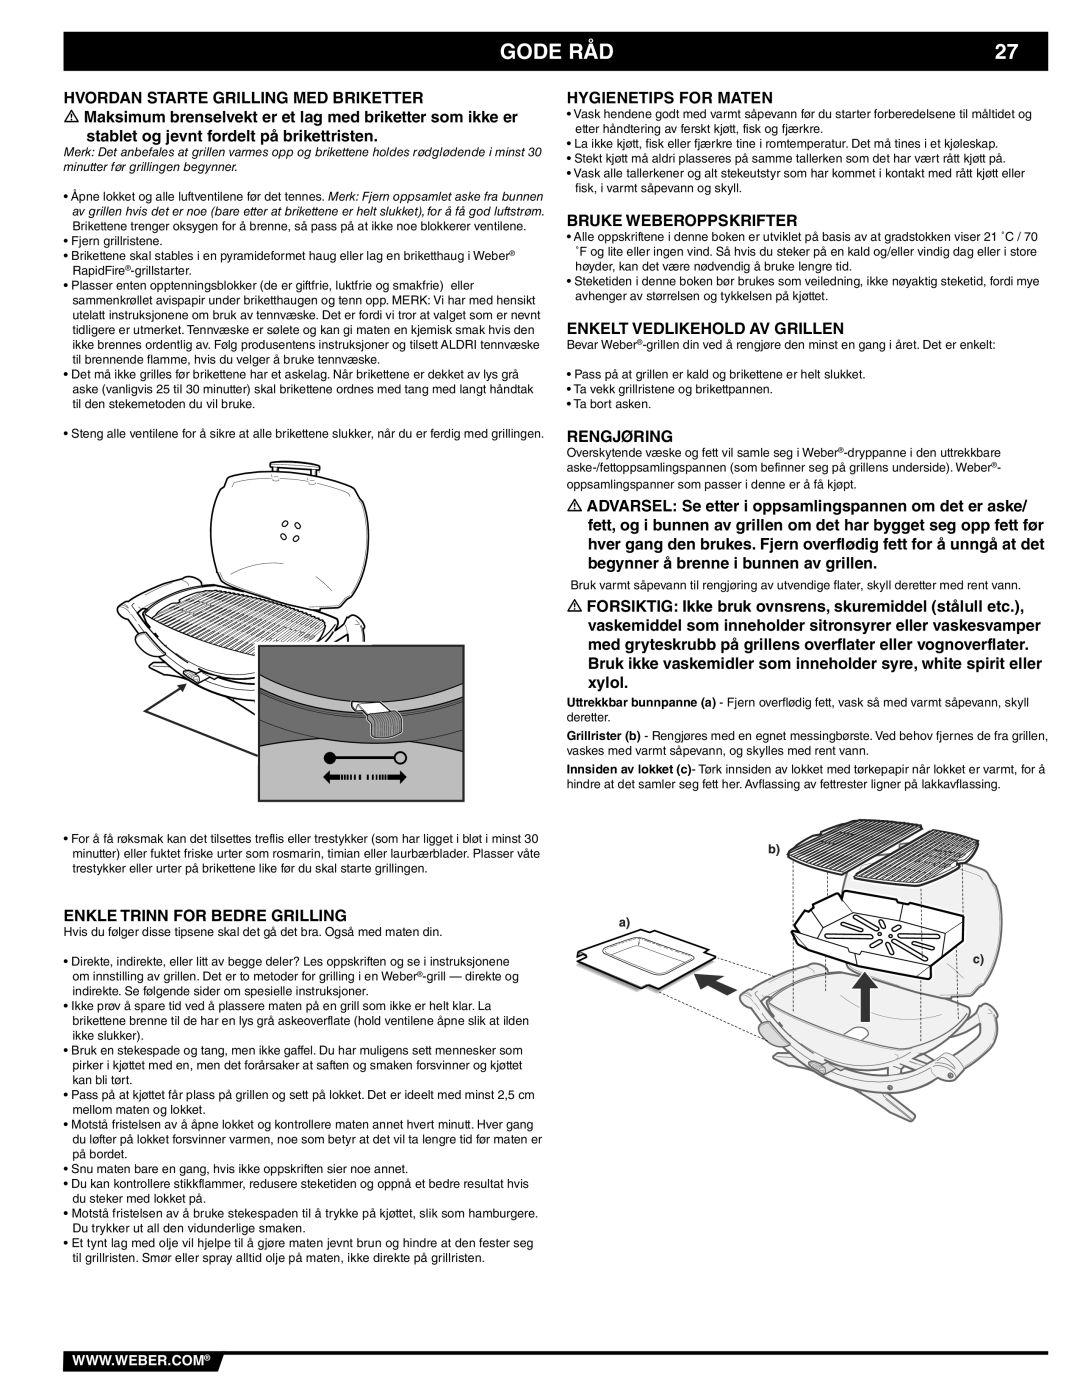 Weber 41093 manual Gode Råd, Enkle Trinn For Bedre Grilling, Hygienetips For Maten, Bruke Weberoppskrifter, Rengjøring 